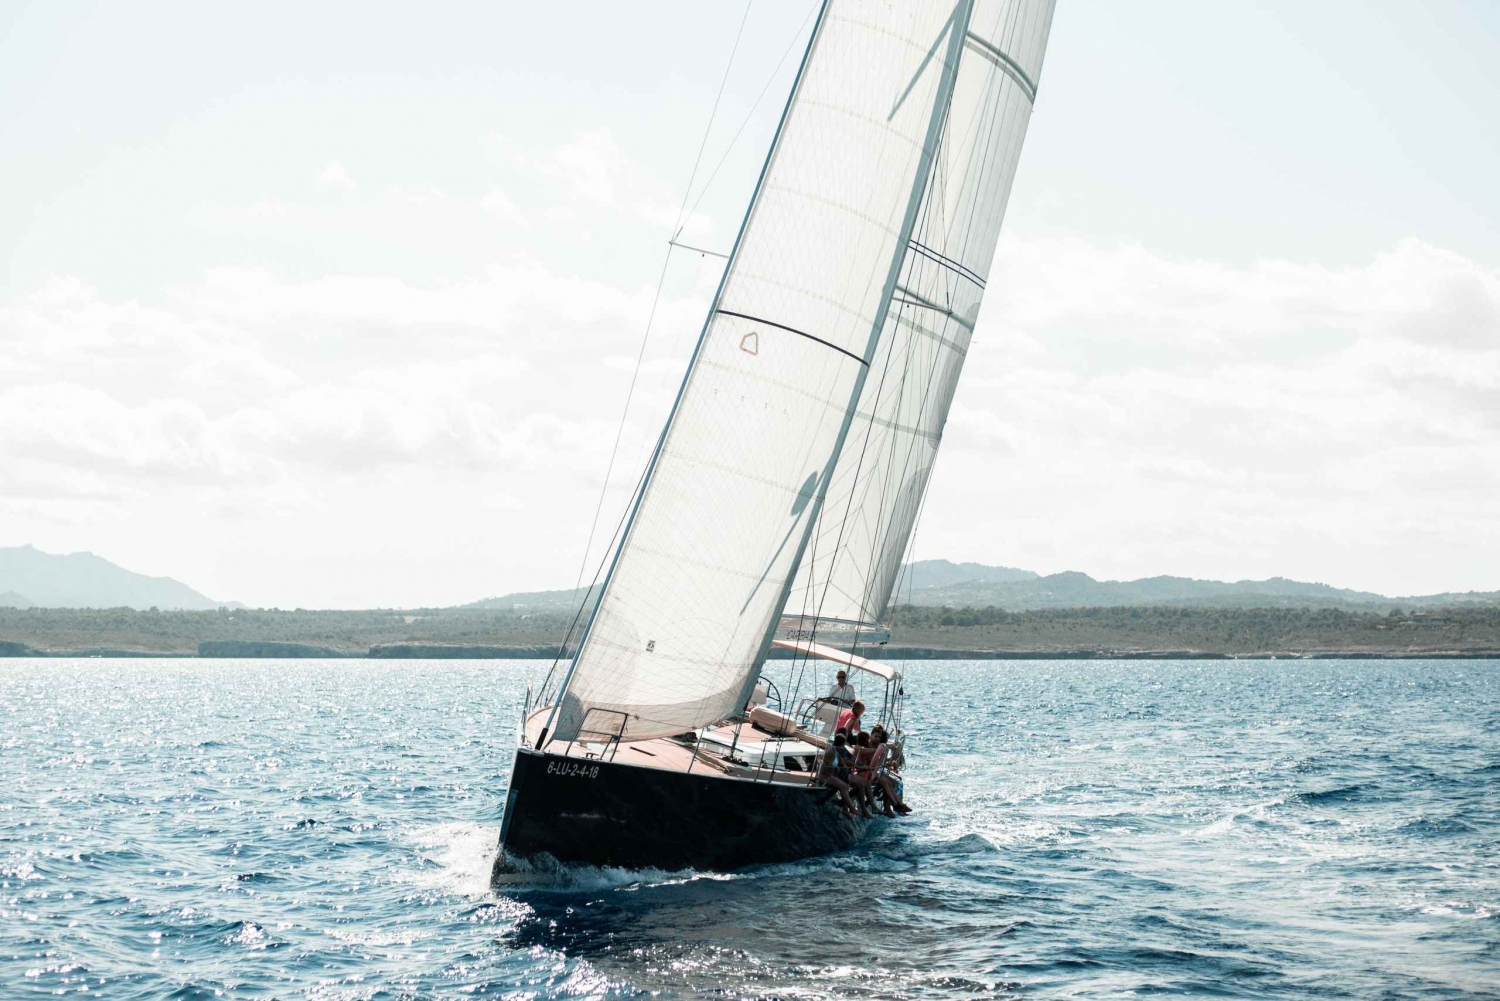 Alcudia: Unik privat heldags seglingstur